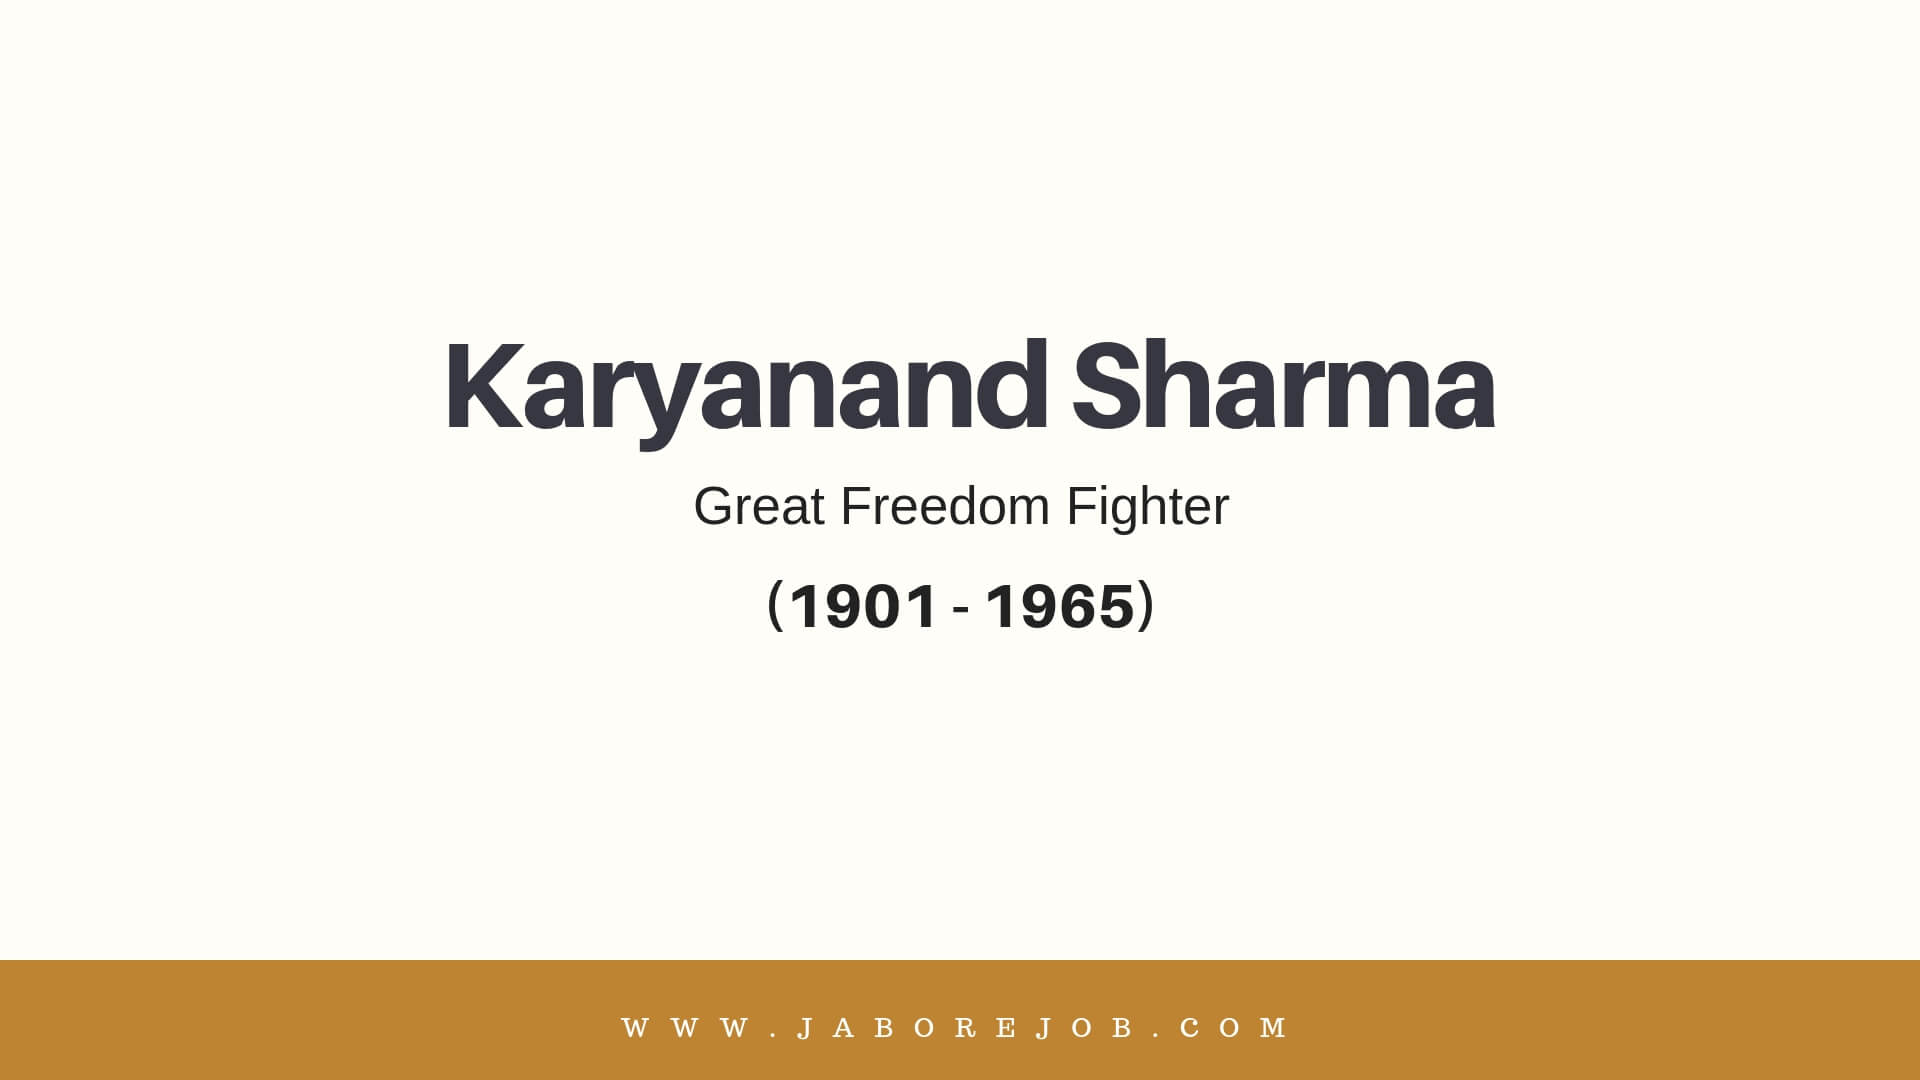 Karyanand Sharma, Karyanand Sharma freedom fighter, Karyanand Sharma biography, Karyanand Sharma history, Karyanand Sharma information, Karyanand Sharma death